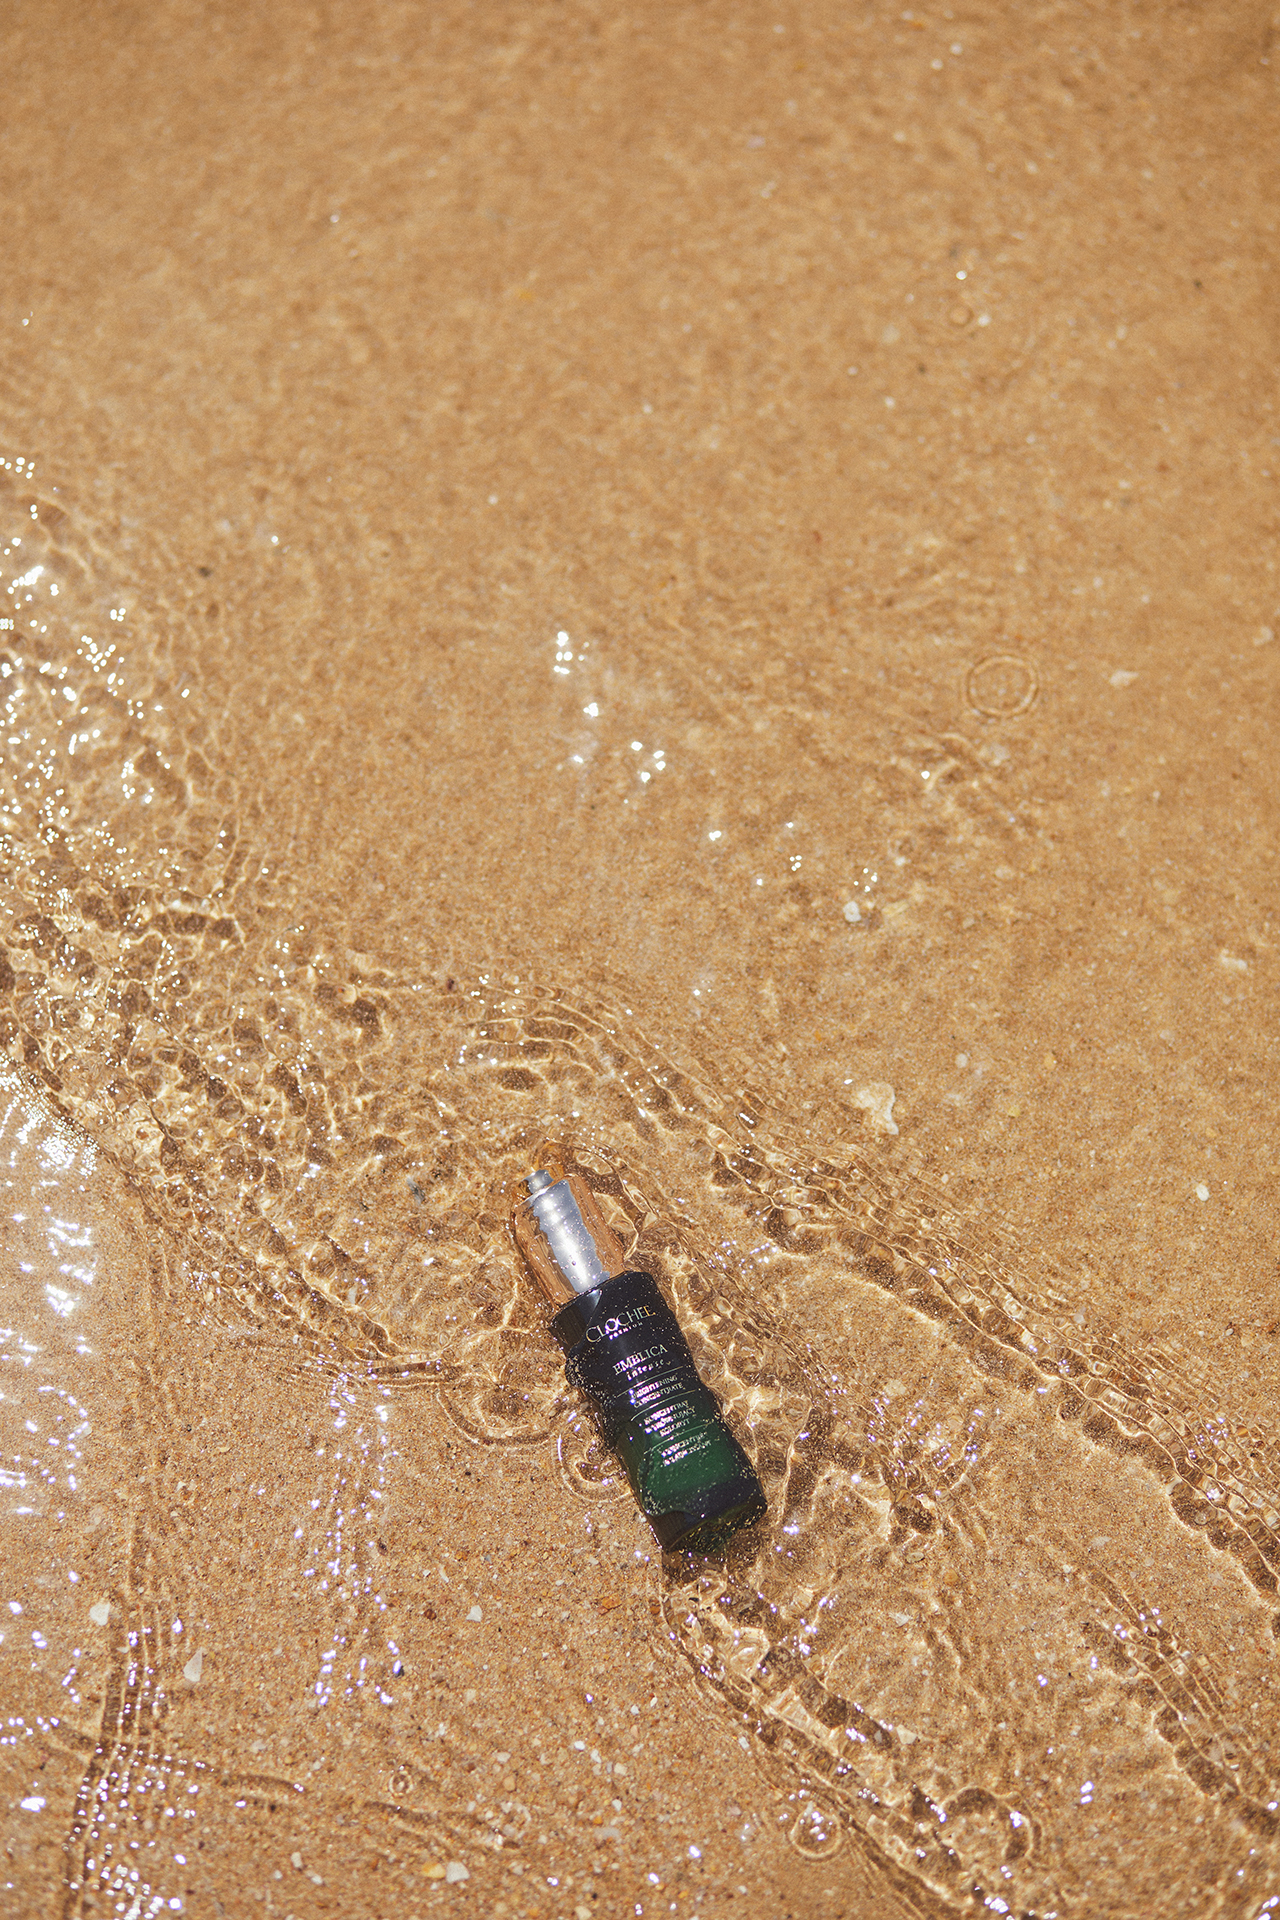 Produkt Clochcee Cosmetics na plaży zaniżony w wodzie